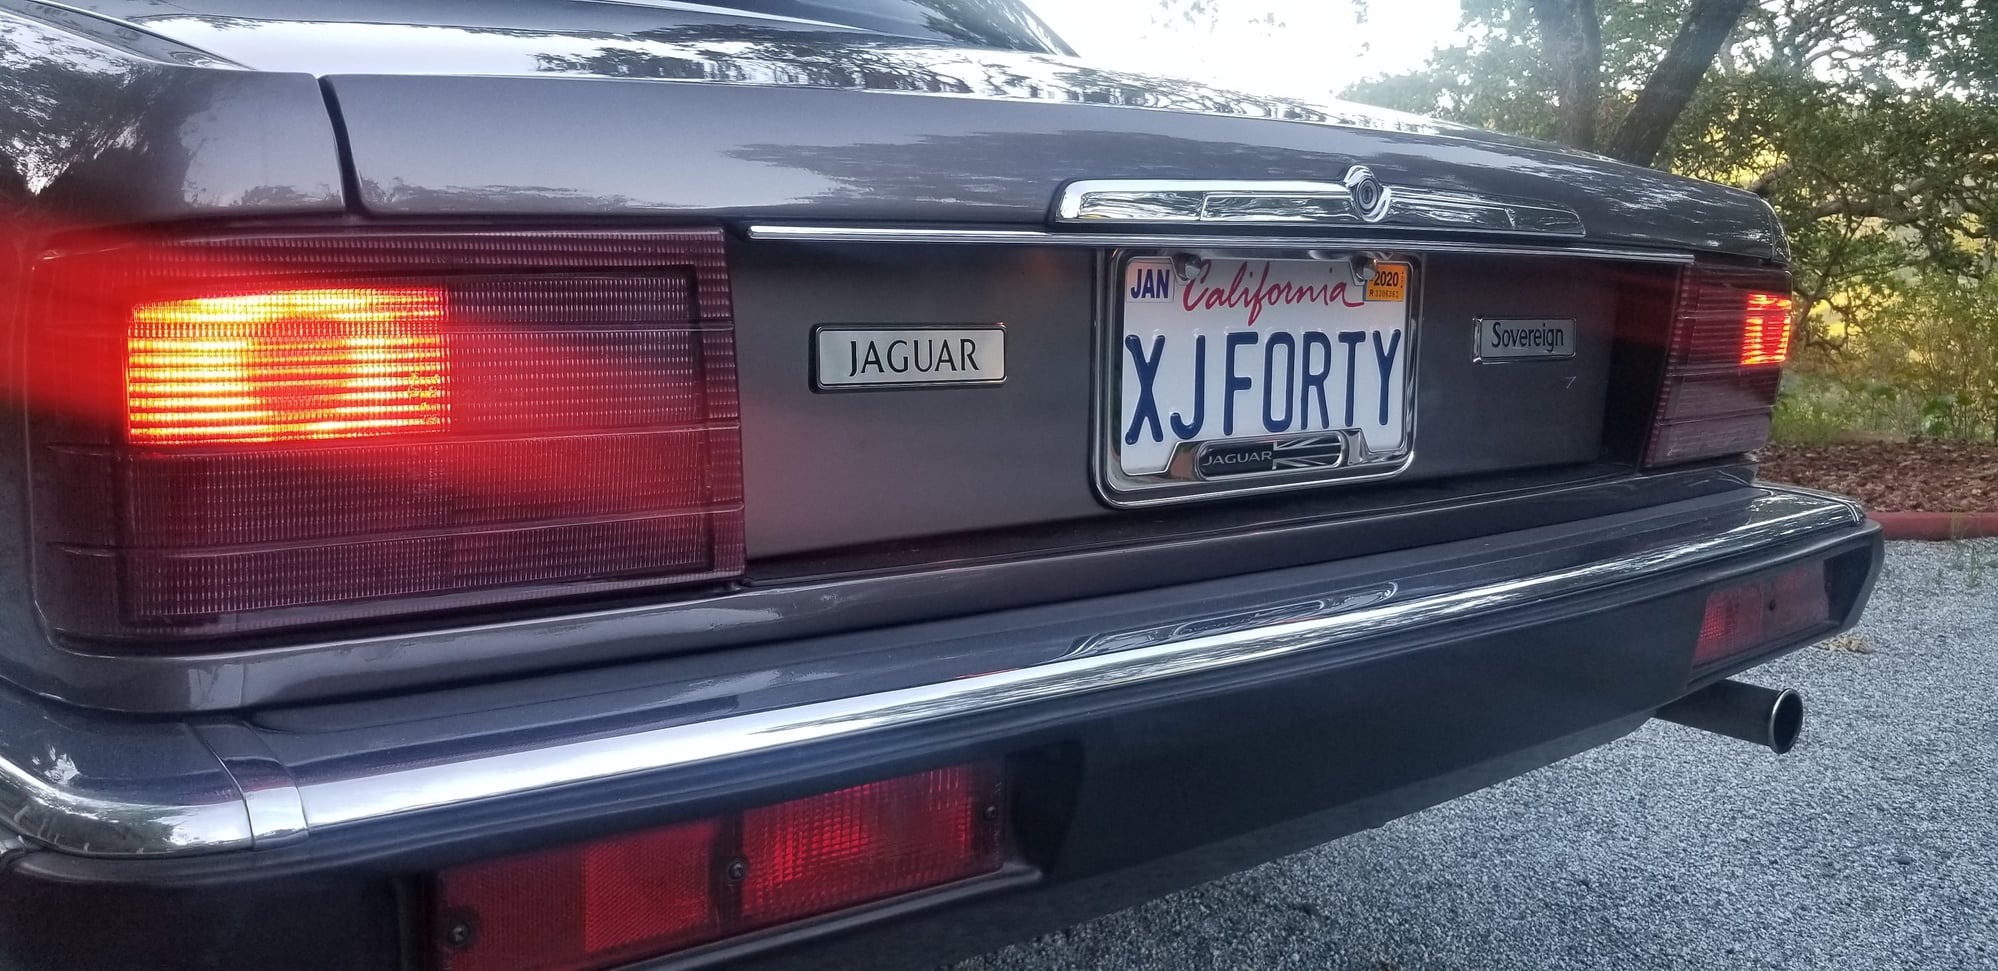 1990 Jaguar XJ6 - 1990 Jaguar XJ6 / XJ40 Sovereign :: 45k miles - Used - VIN SAJHY1741LC595715 - 45,000 Miles - 6 cyl - 2WD - Automatic - Sedan - Gray - Morgan Hill, CA 95037, United States